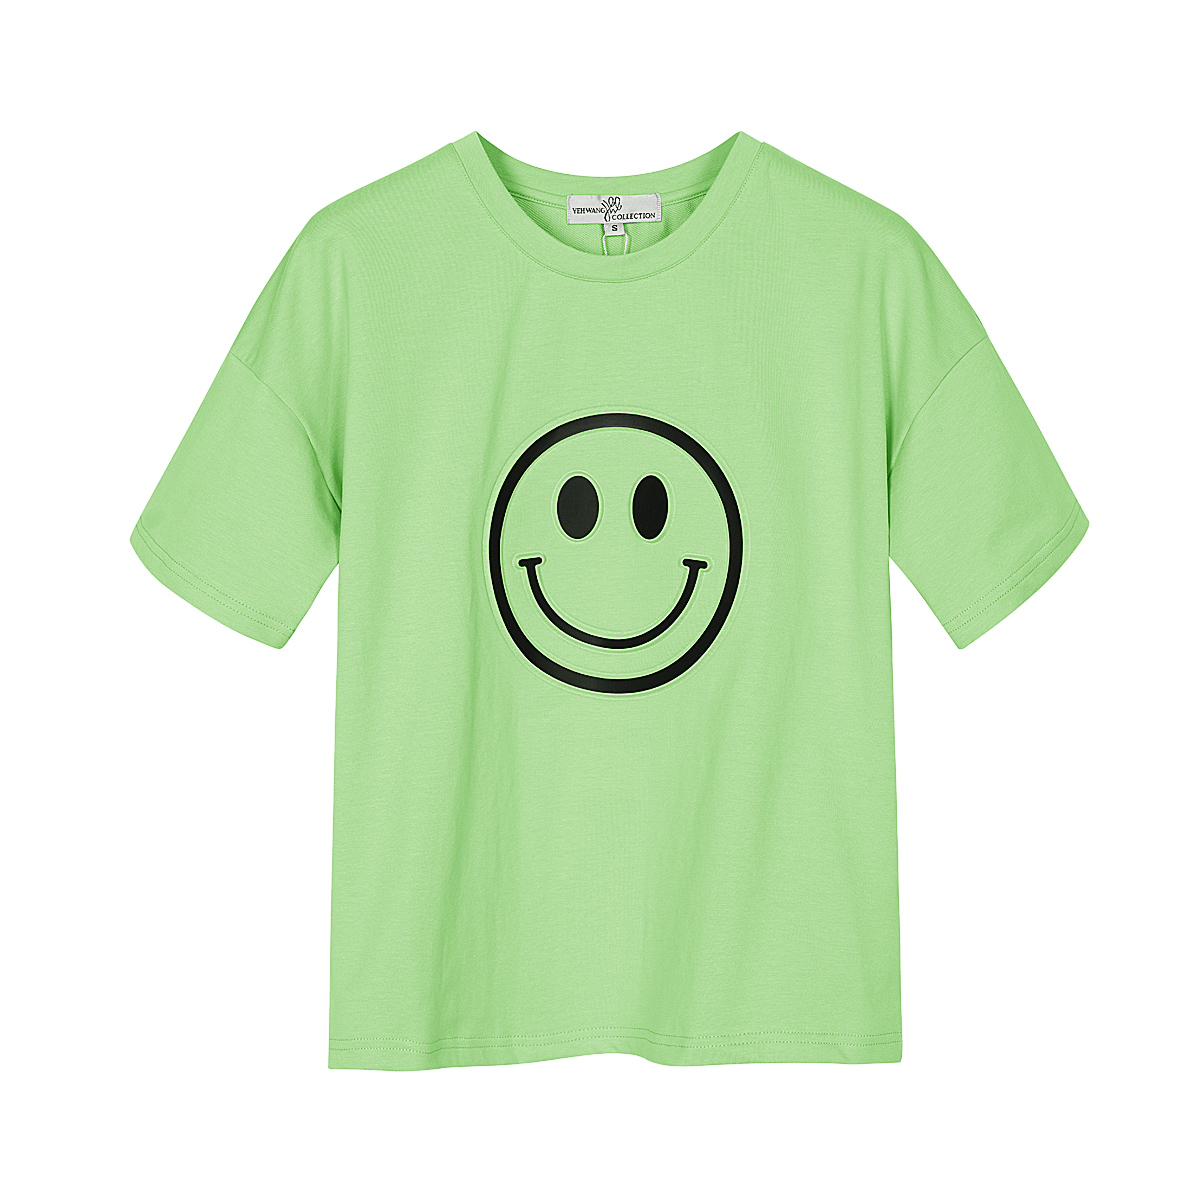 T-shirt mit smiley-gesicht